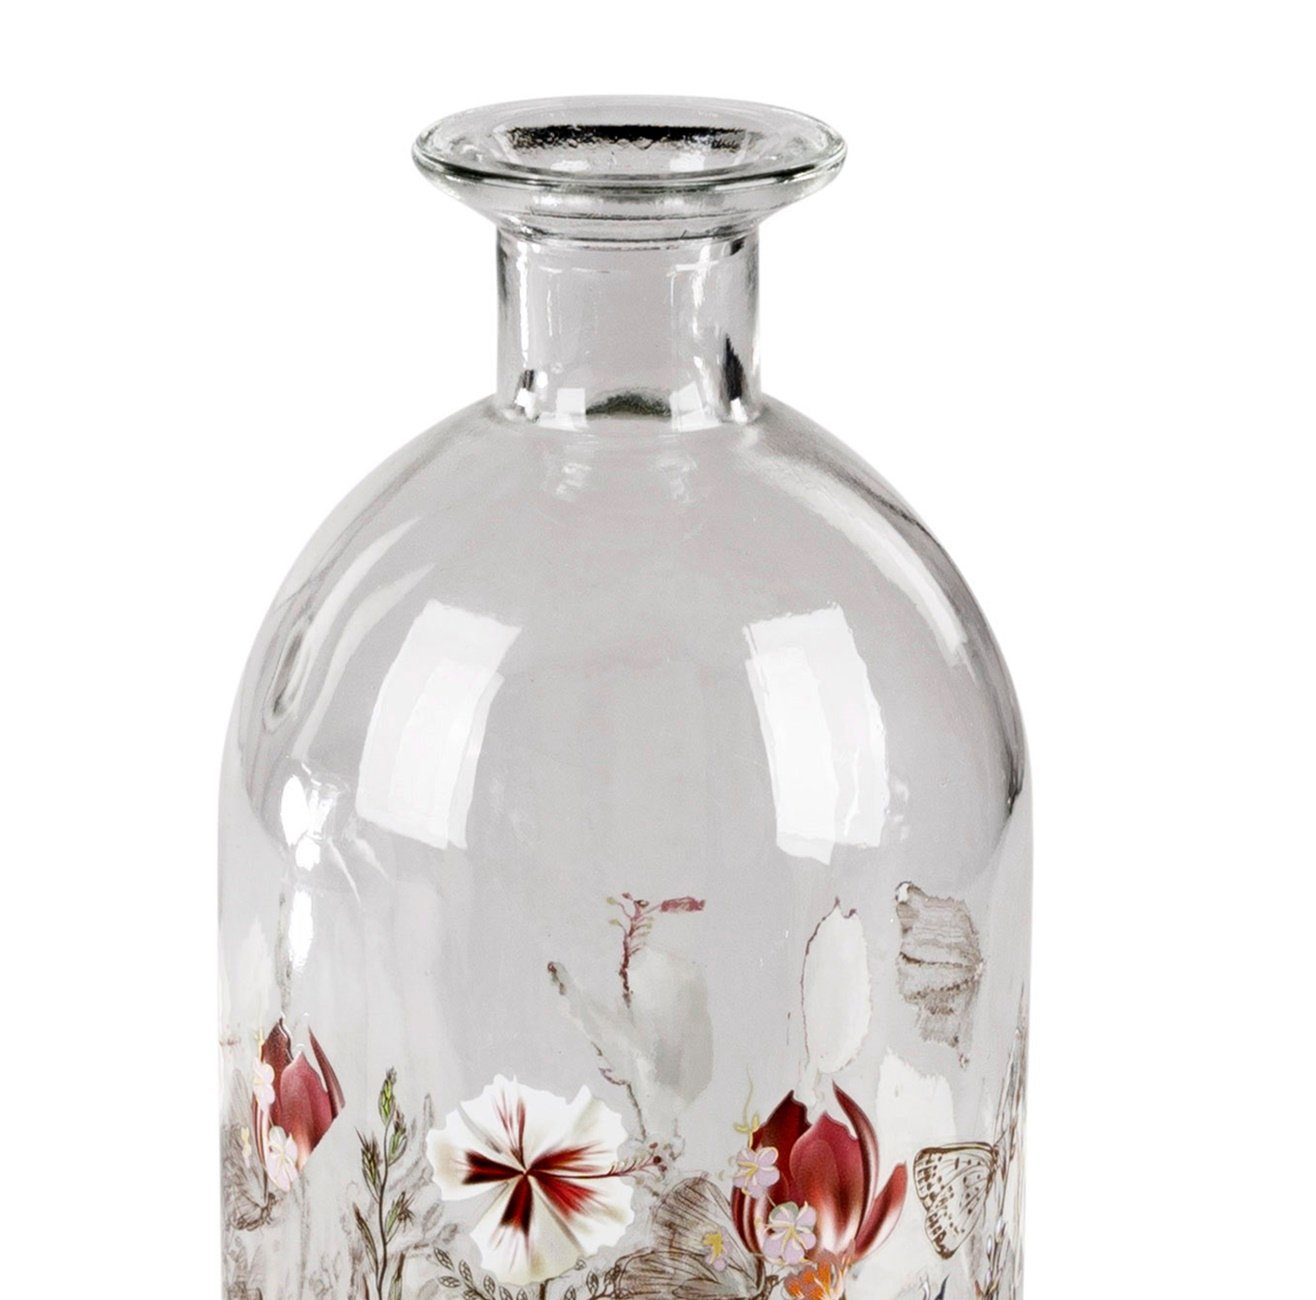 dekojohnson Dekovase Deko-Vase-Flasche Glasvase Blumenvase (Keines) 26cm